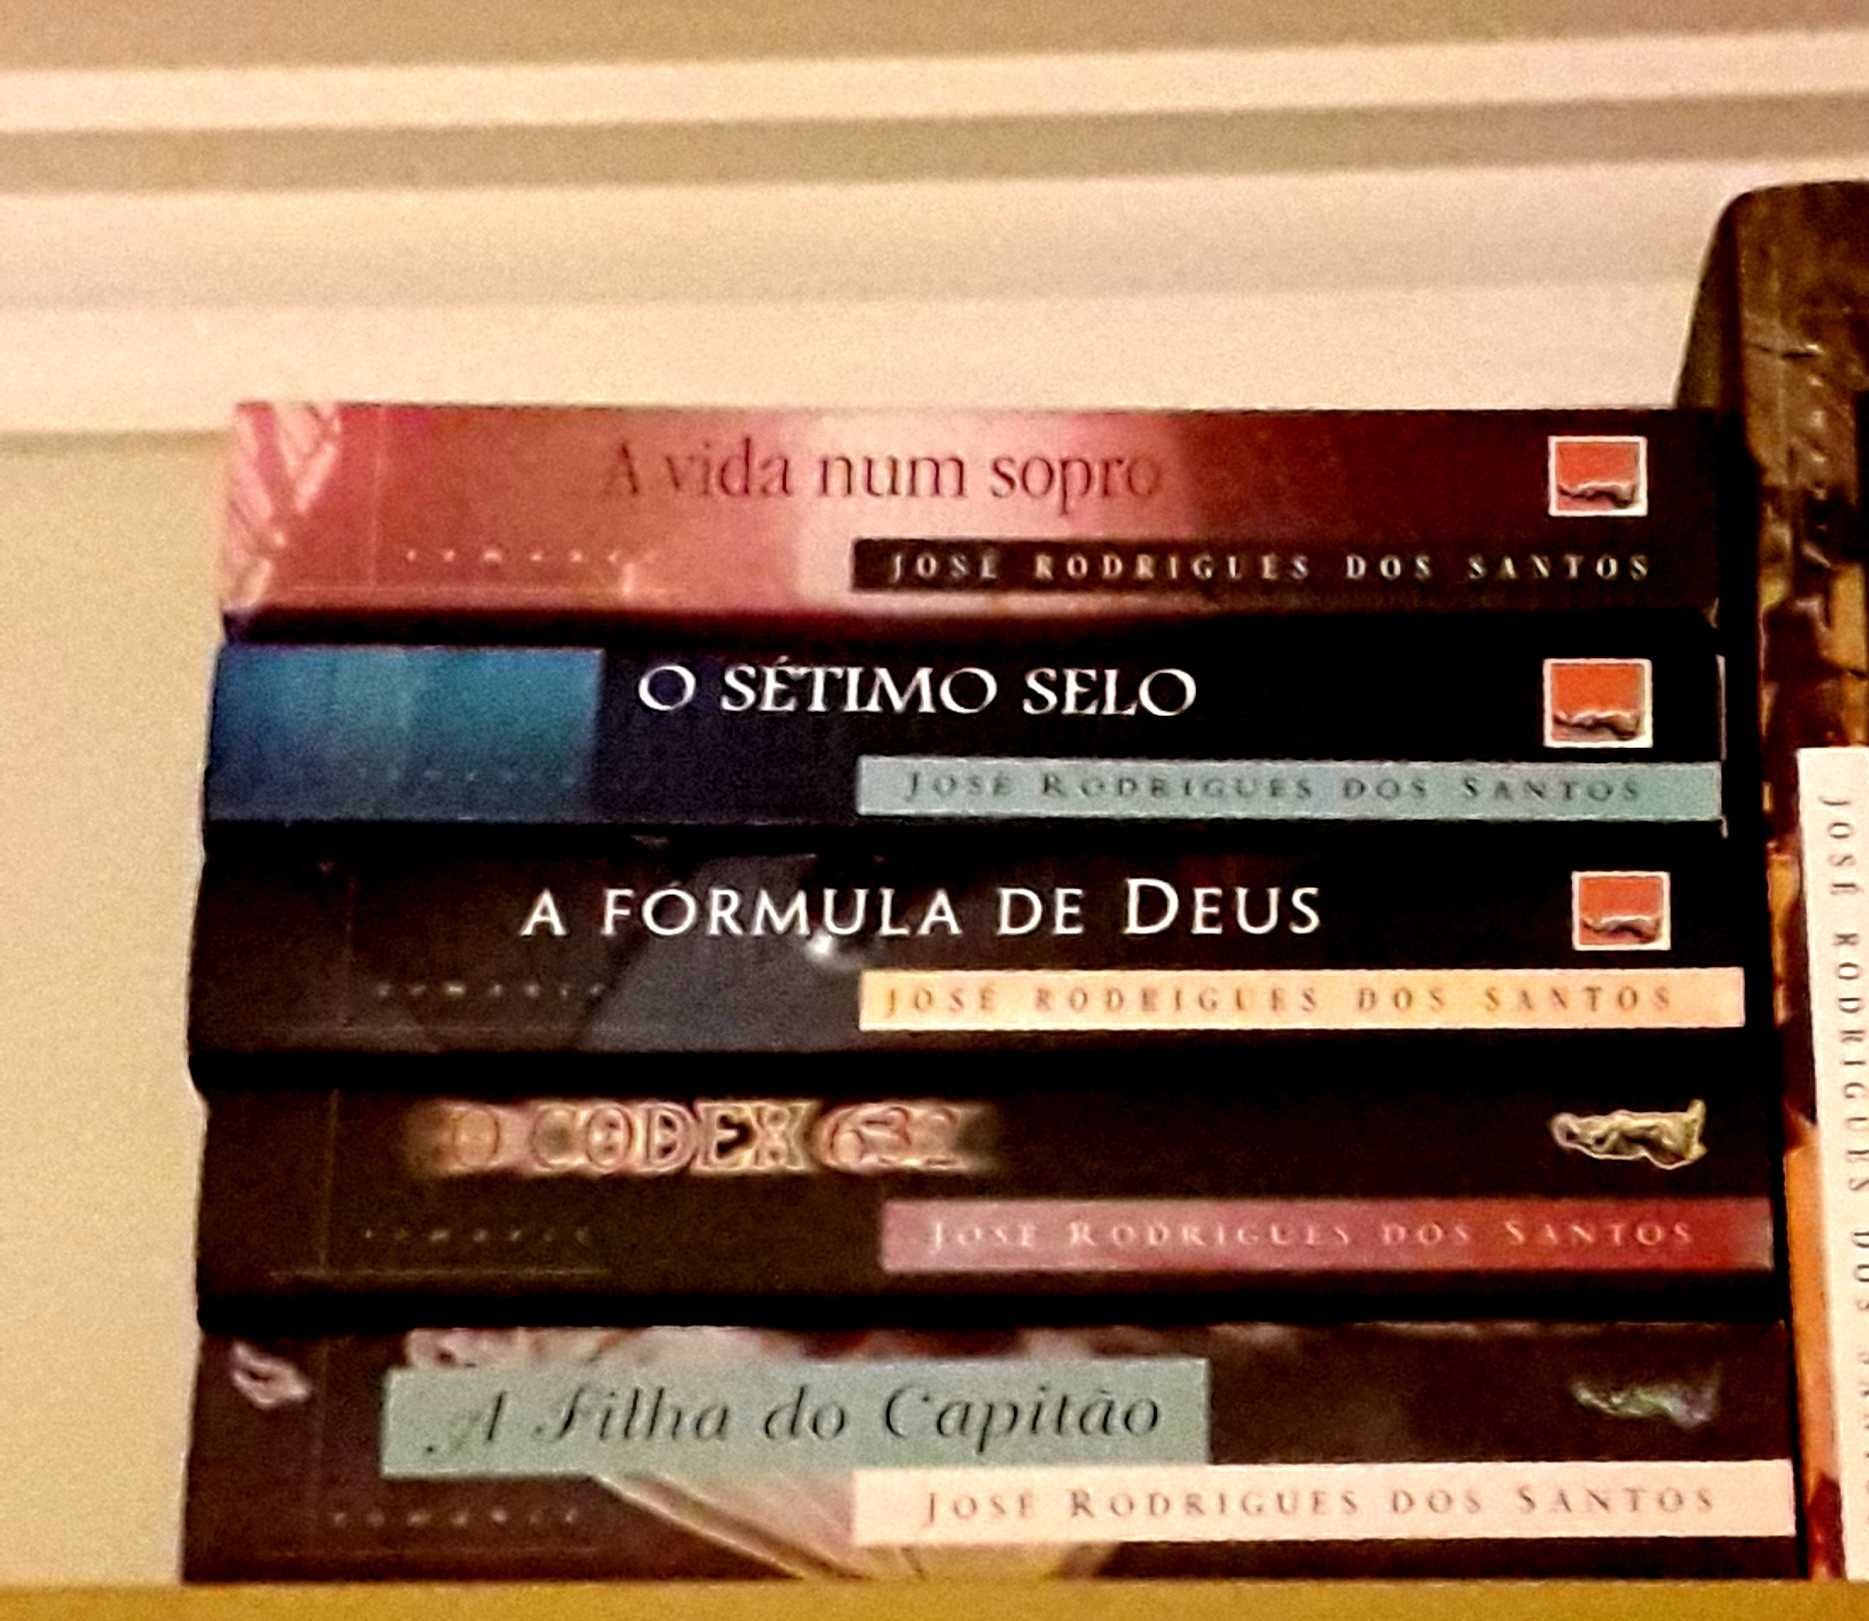 José Rodrigues dos Santos - Vários livros